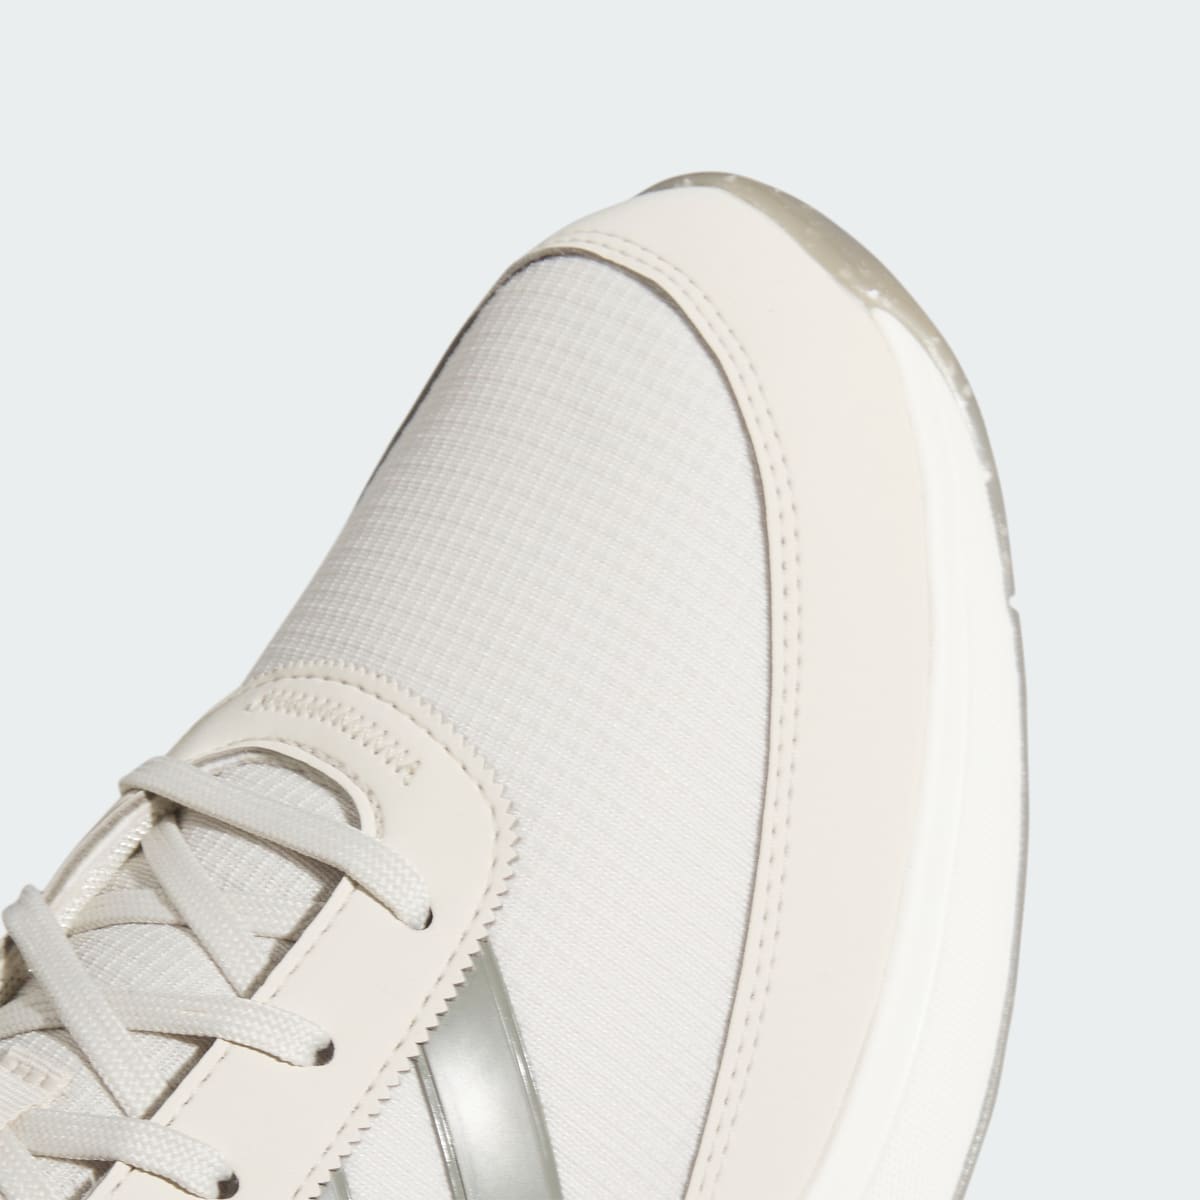 Adidas S2G 24 Spikeless Golf Shoes. 8